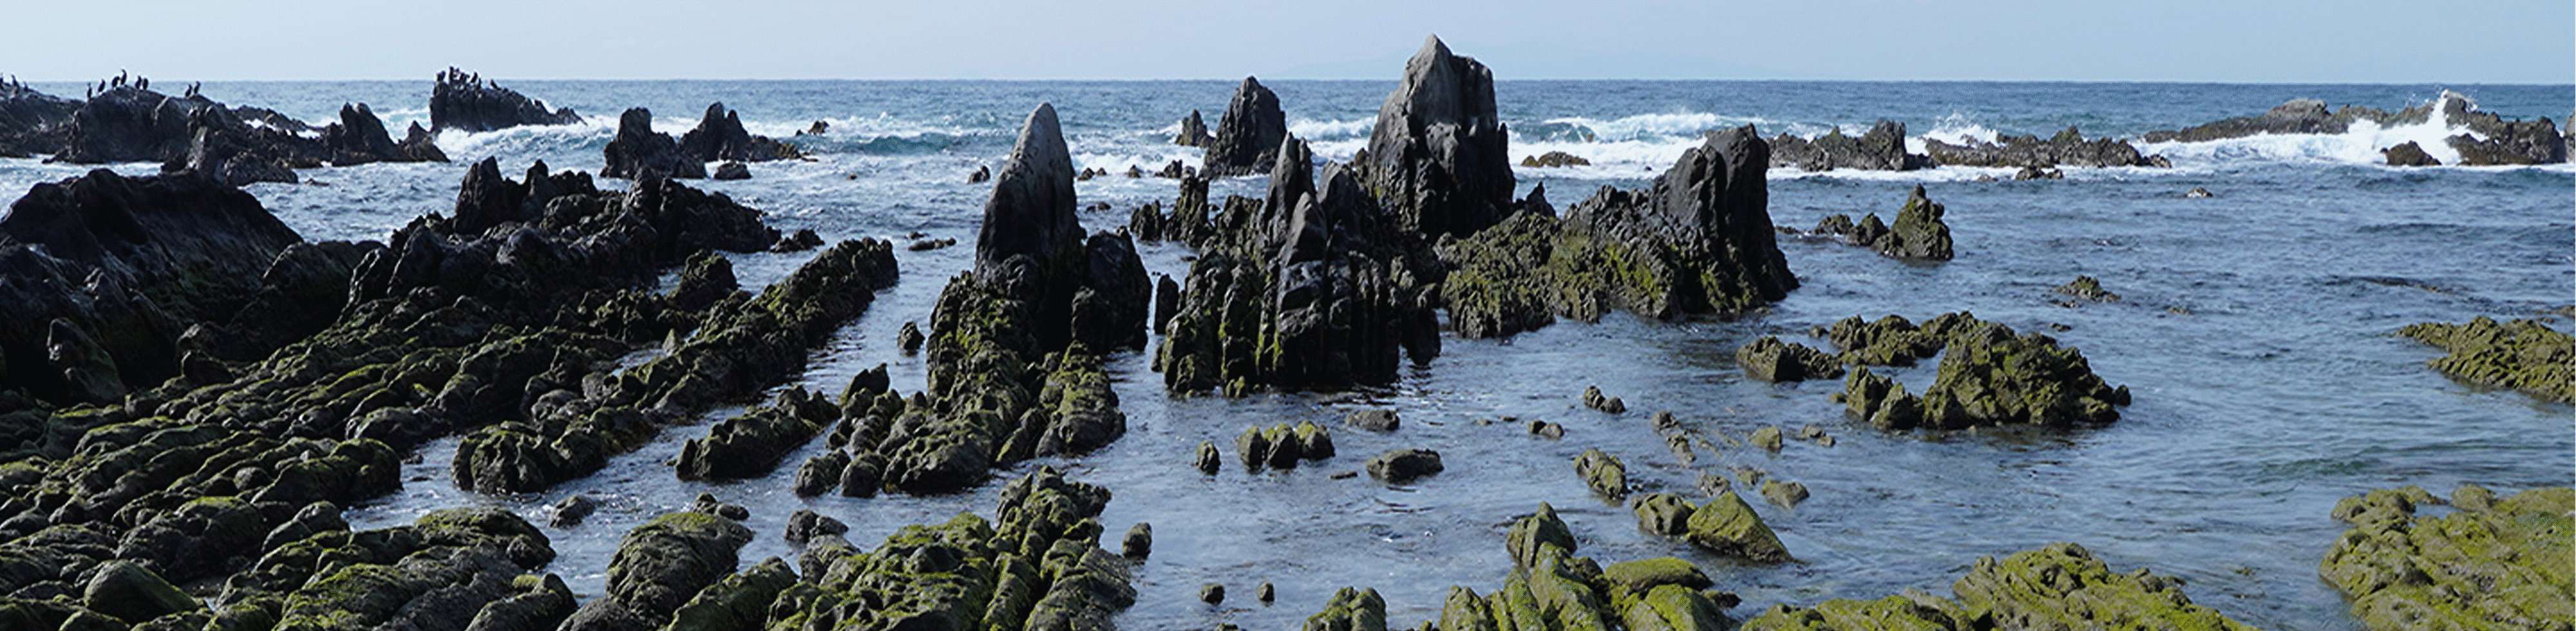 Billede af klipper ved kysten